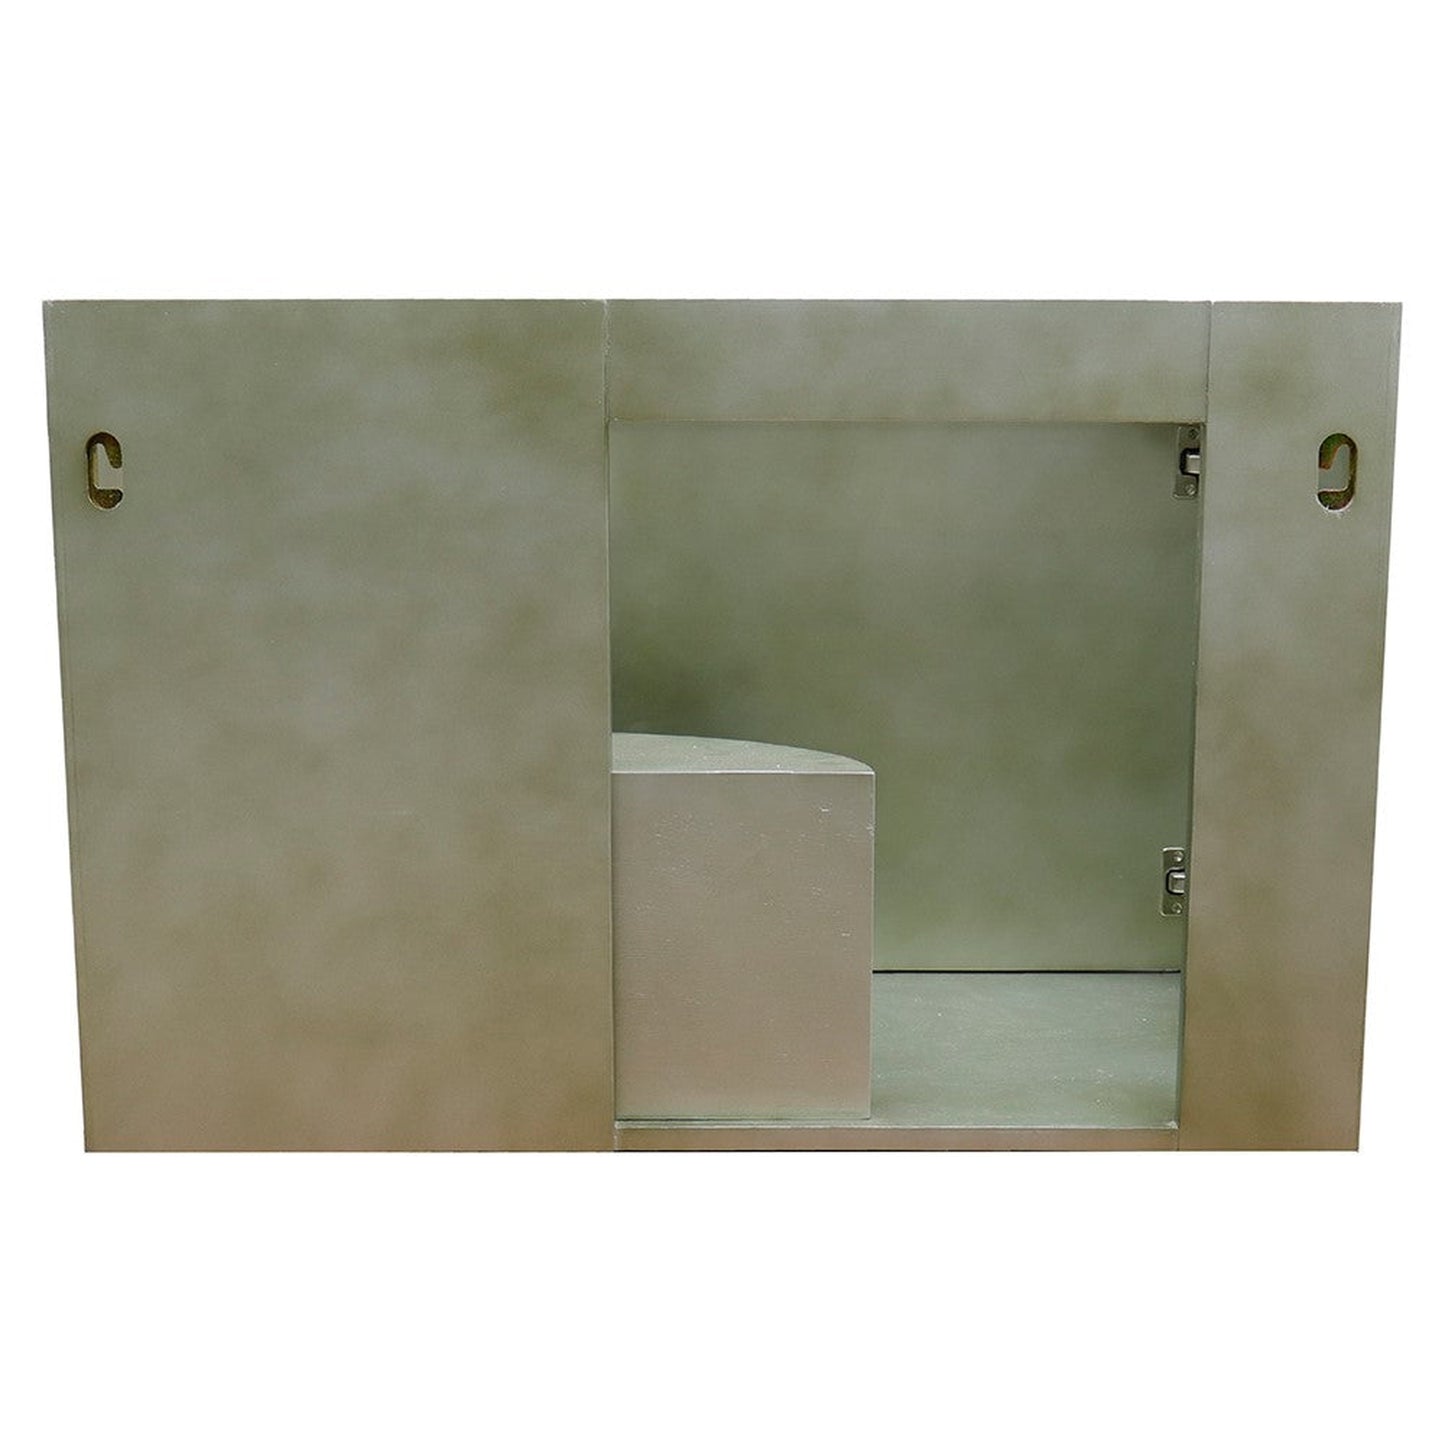 Bellaterra Home Scandi 37" 1-Door 2-Drawer Linen Brown Wall-Mount Vanity Set With Ceramic Vessel Sink and Gray Granite Top